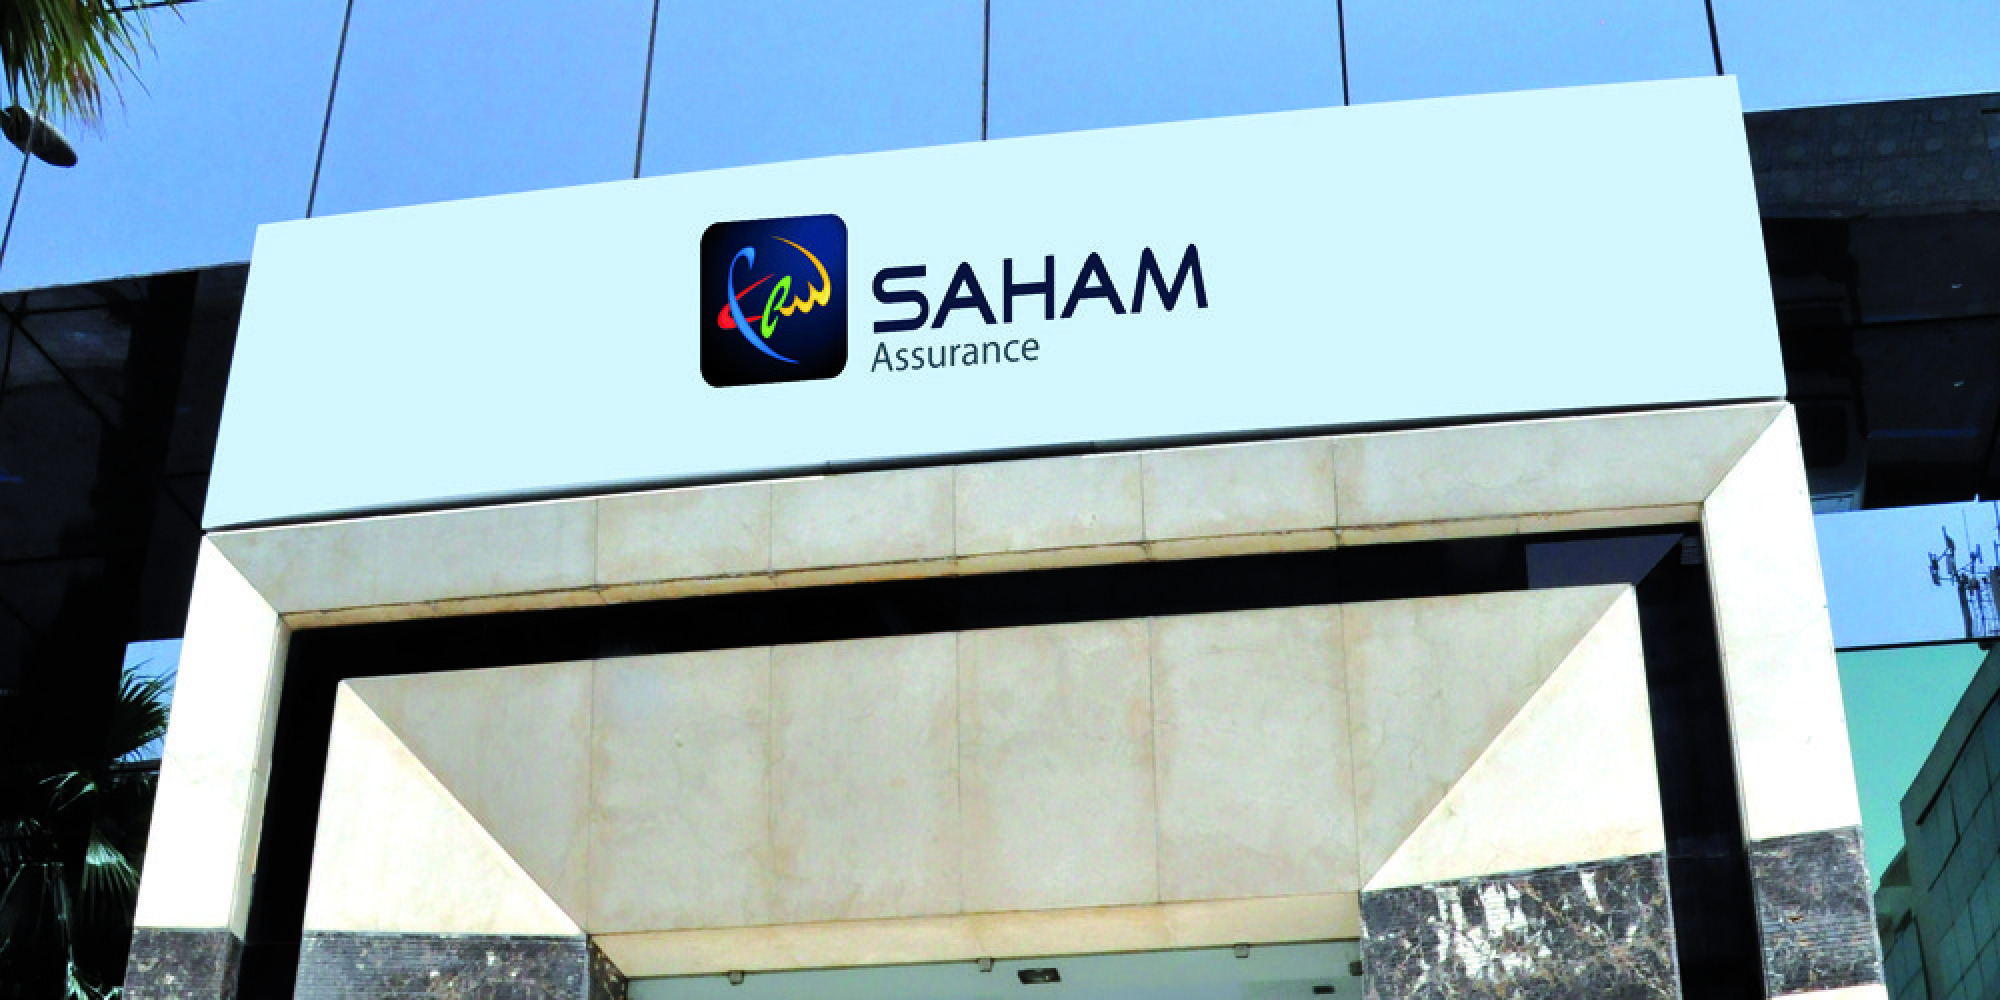 Saham Assurance casse sa tirelire pour le Fonds de solidarité des Assurances